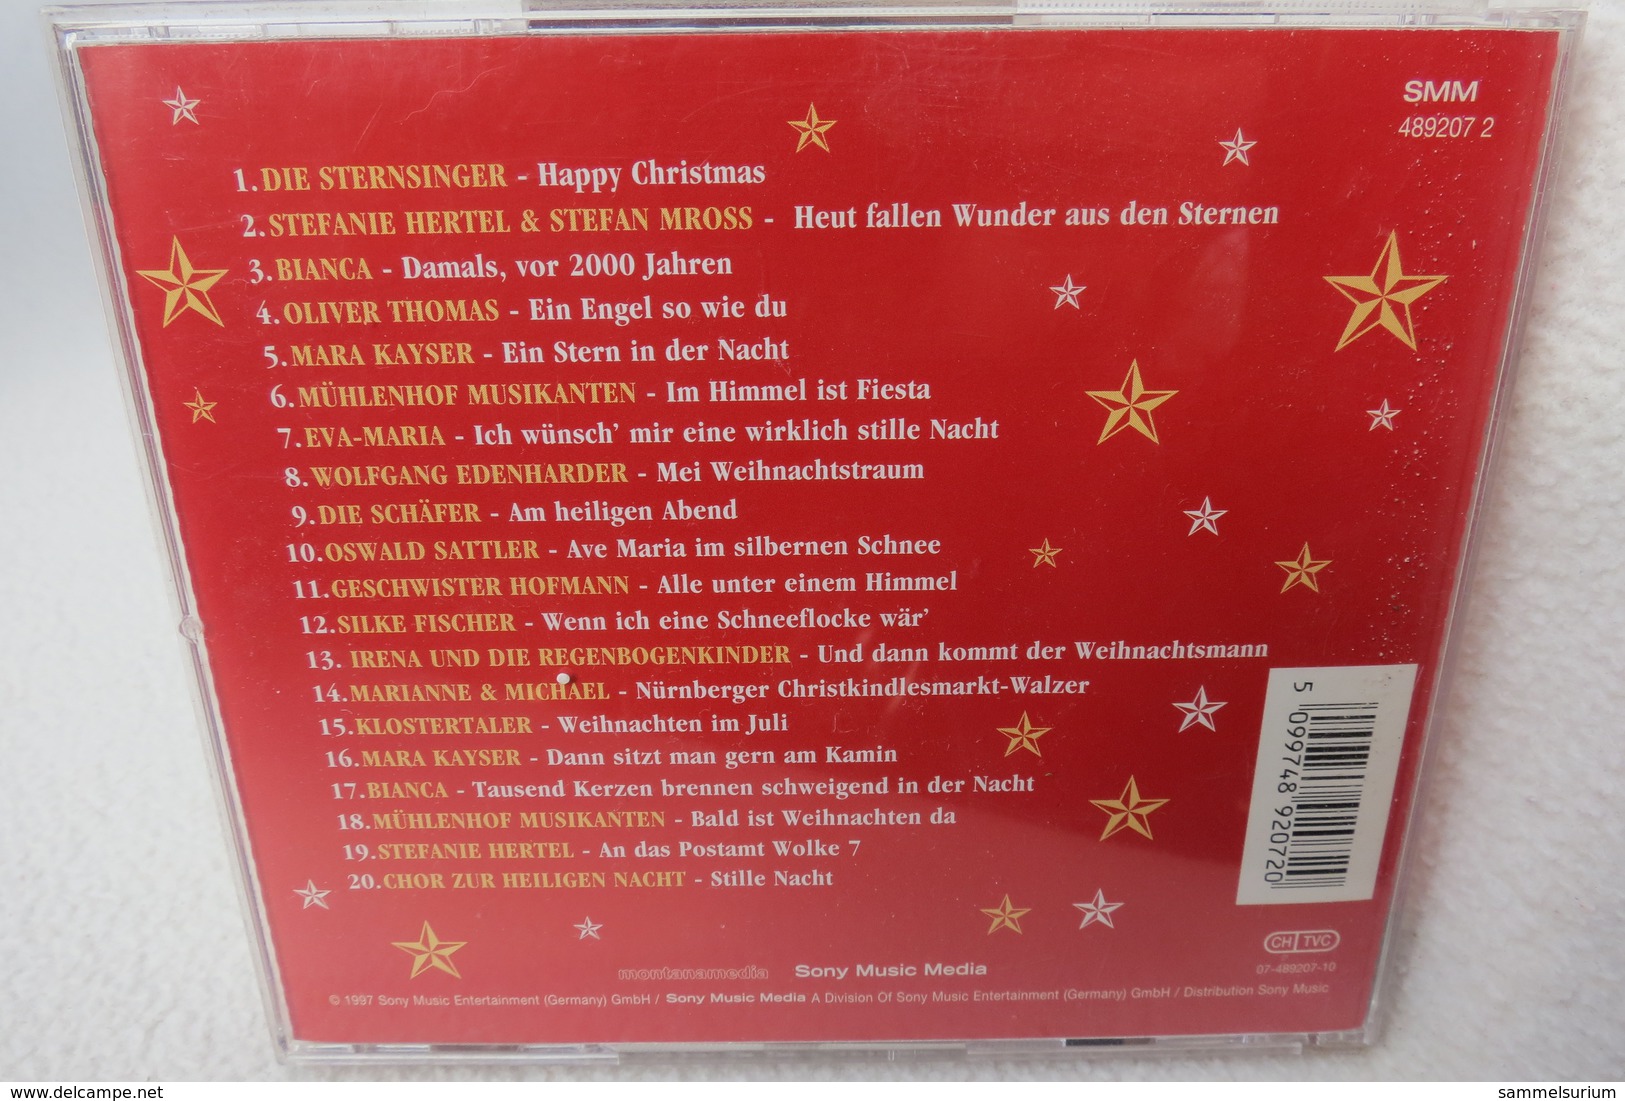 CD "Unser Schönstes Fest" Neue Lieder Zur Weihnachtszeit, Vorgestellt Von Carolin Reiber - Canzoni Di Natale